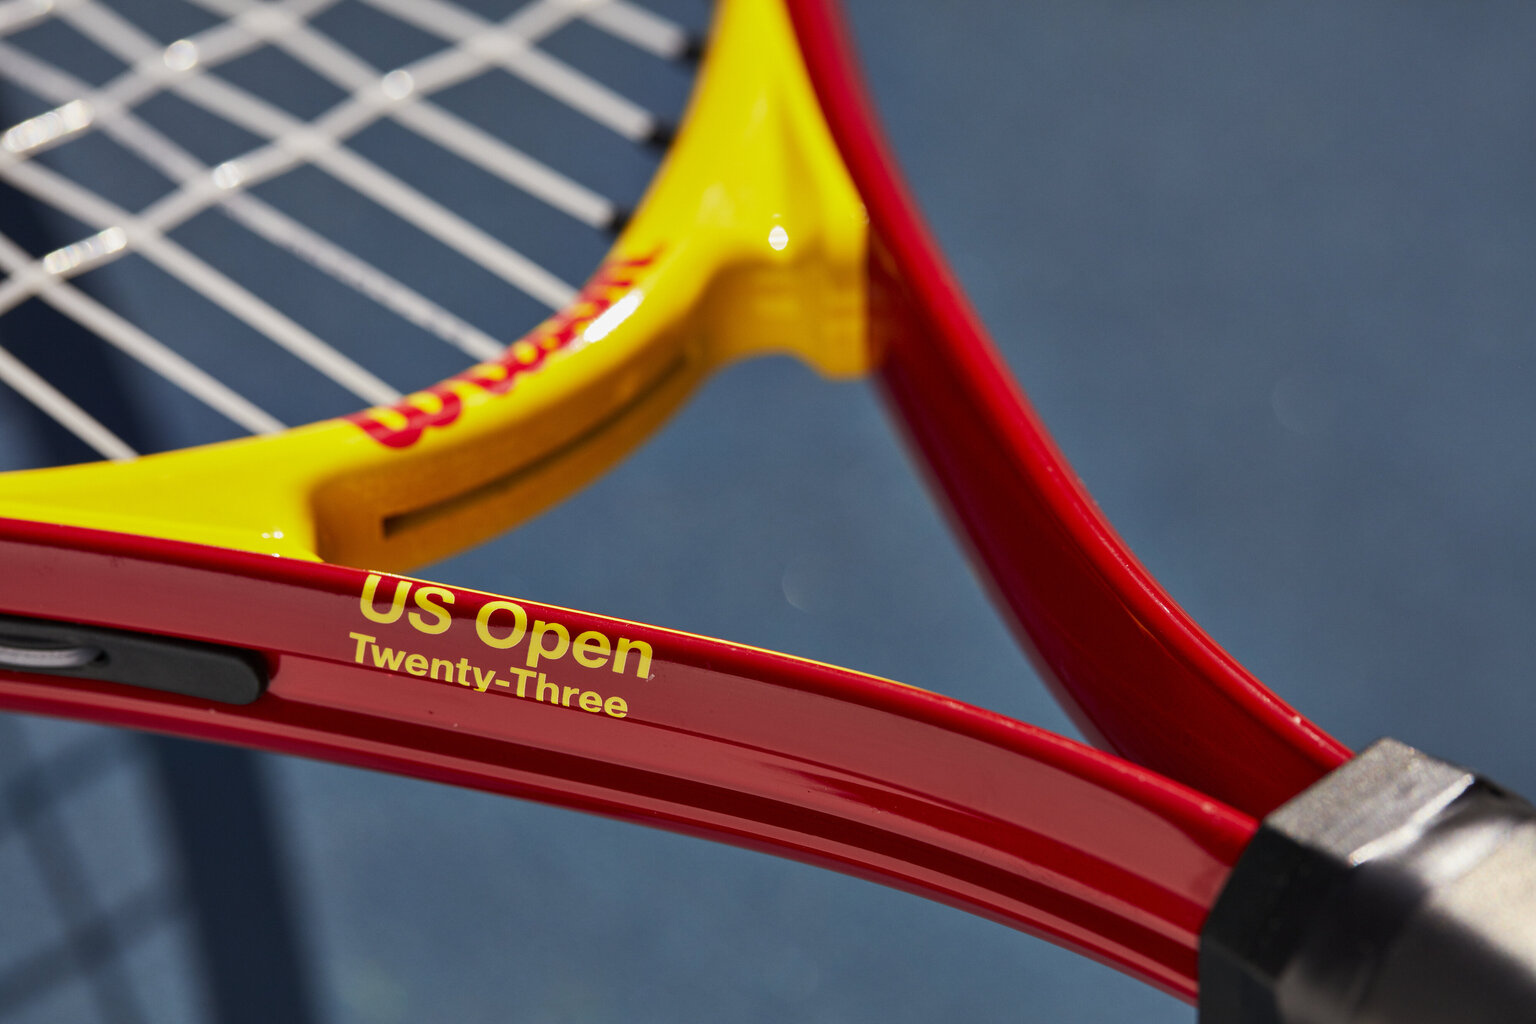 Teniso raketė vaikams Wilson US Open JR 23, 0 dydis kaina ir informacija | Lauko teniso prekės | pigu.lt